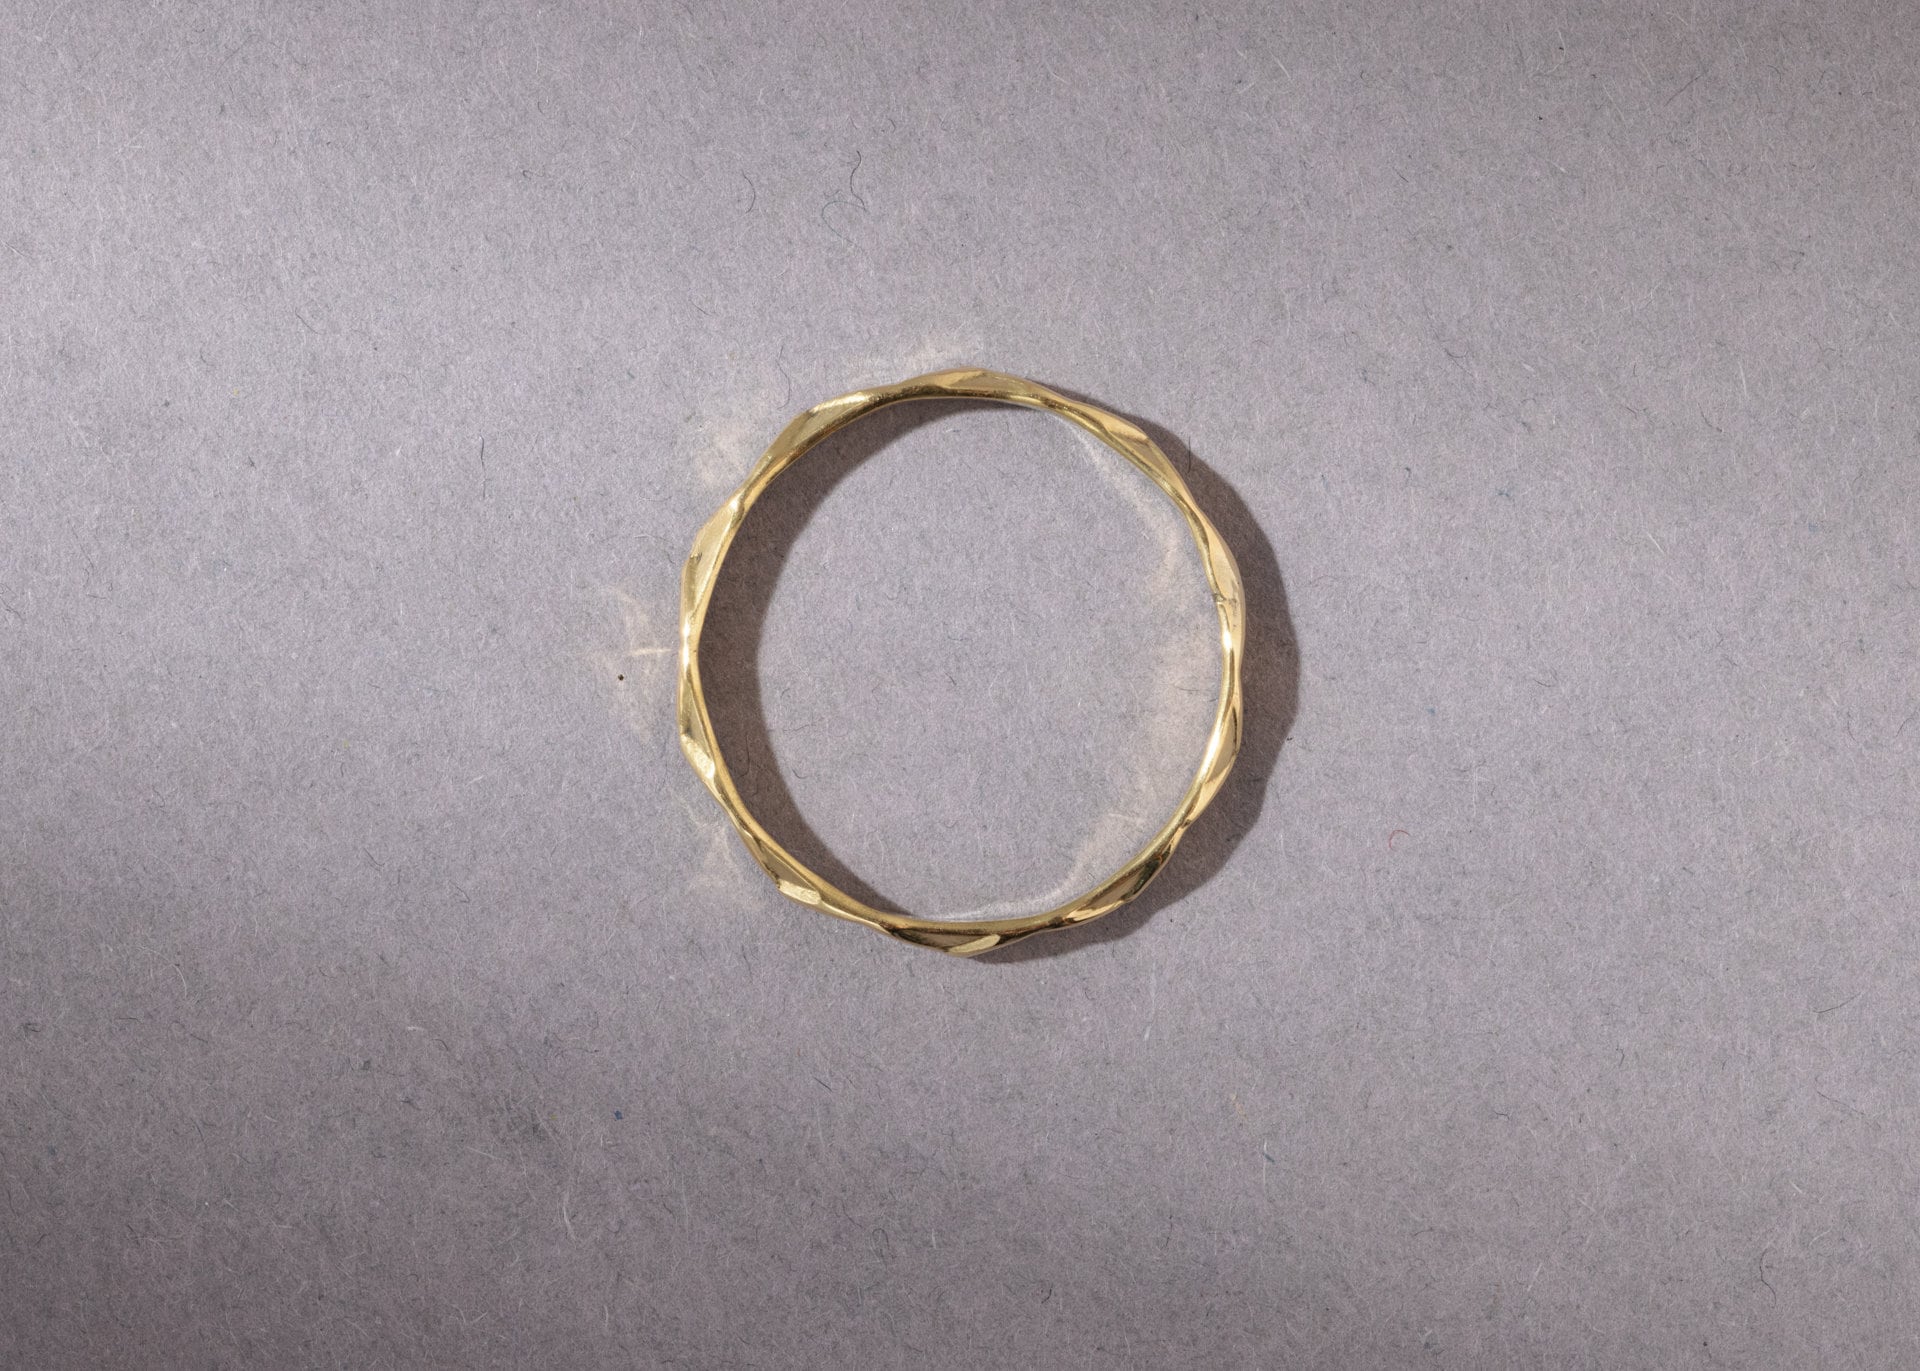 Zierlicher simpler Ring gold handgemacht